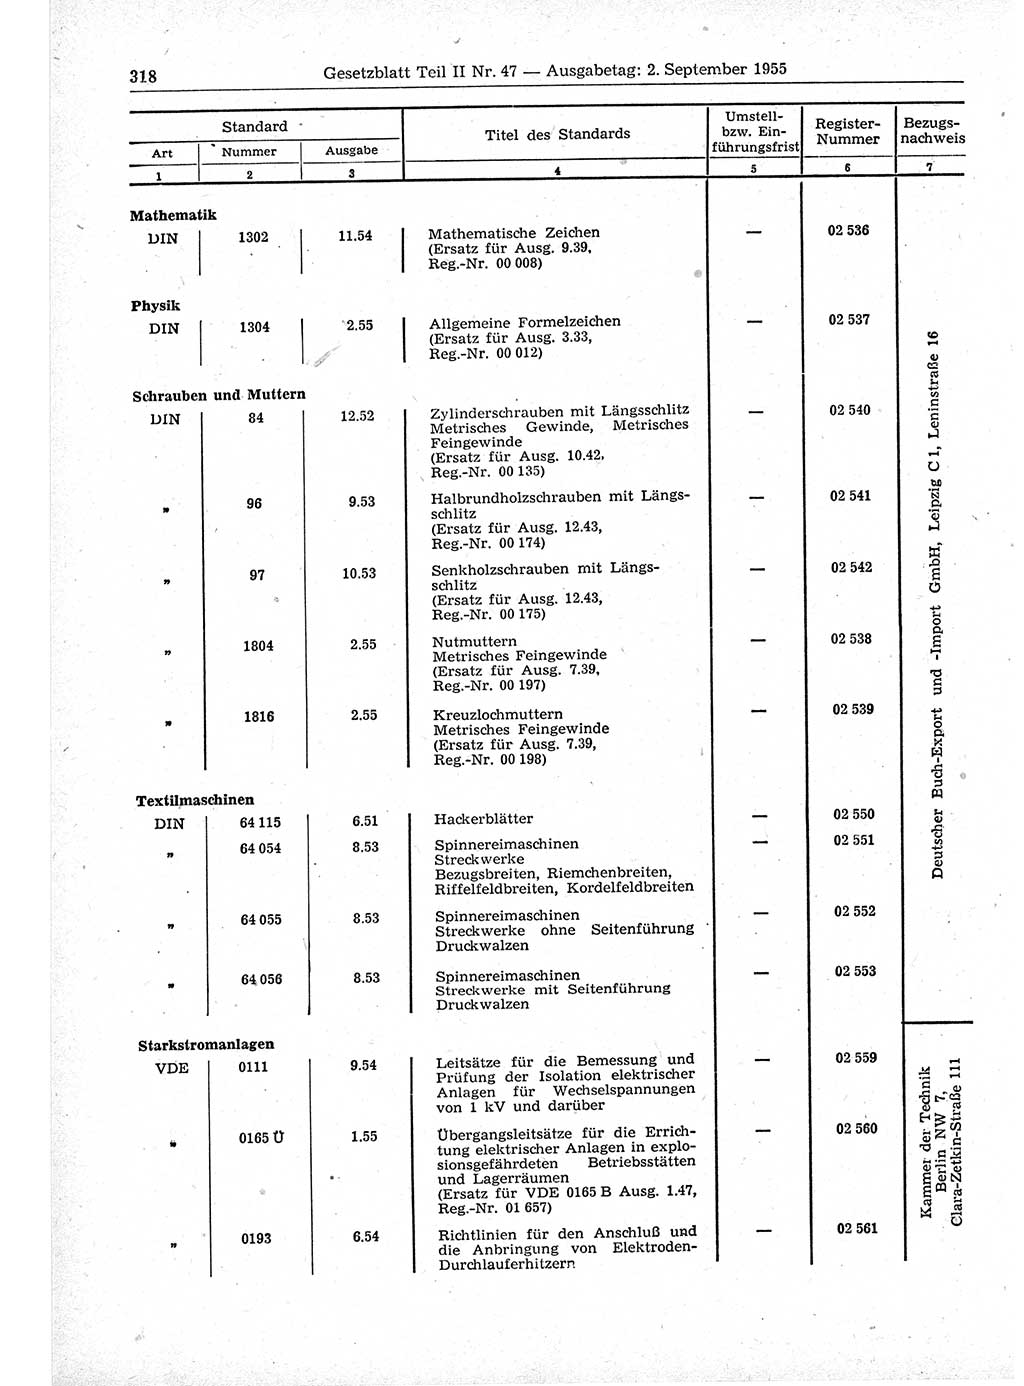 Gesetzblatt (GBl.) der Deutschen Demokratischen Republik (DDR) Teil ⅠⅠ 1955, Seite 318 (GBl. DDR ⅠⅠ 1955, S. 318)